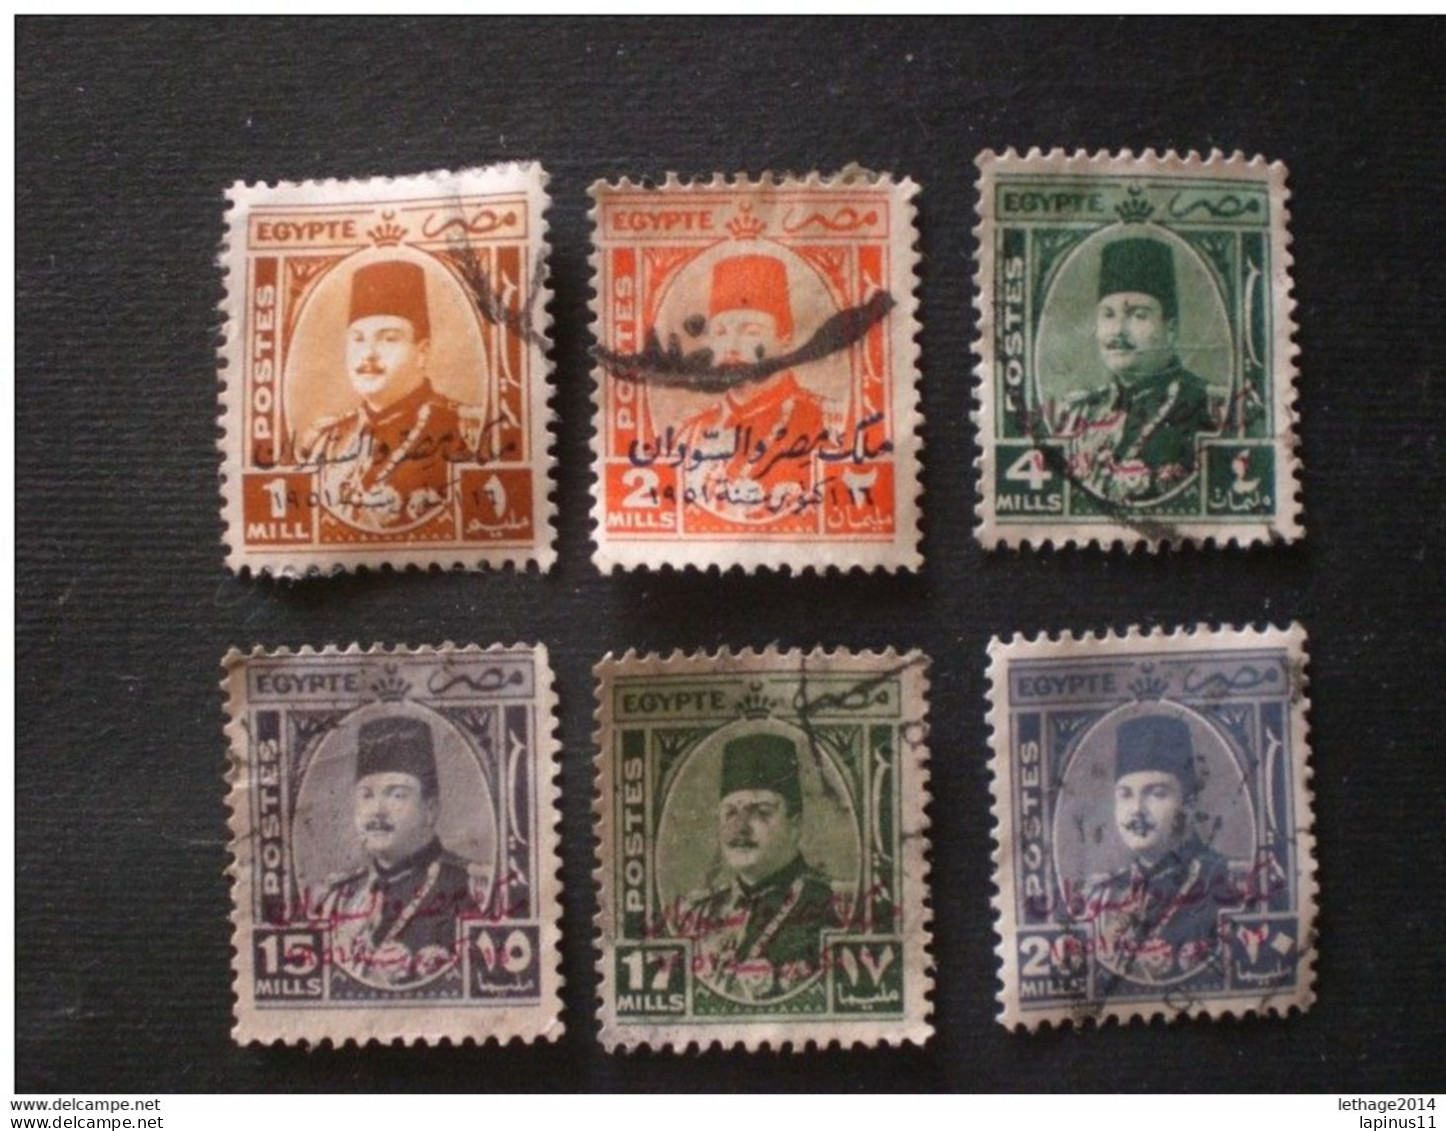 EGYPT 1948 King Farouk - Egypt Postage Stamps Of 1951 Overprinted "SUDAN" In Arabic RARE - Gebruikt